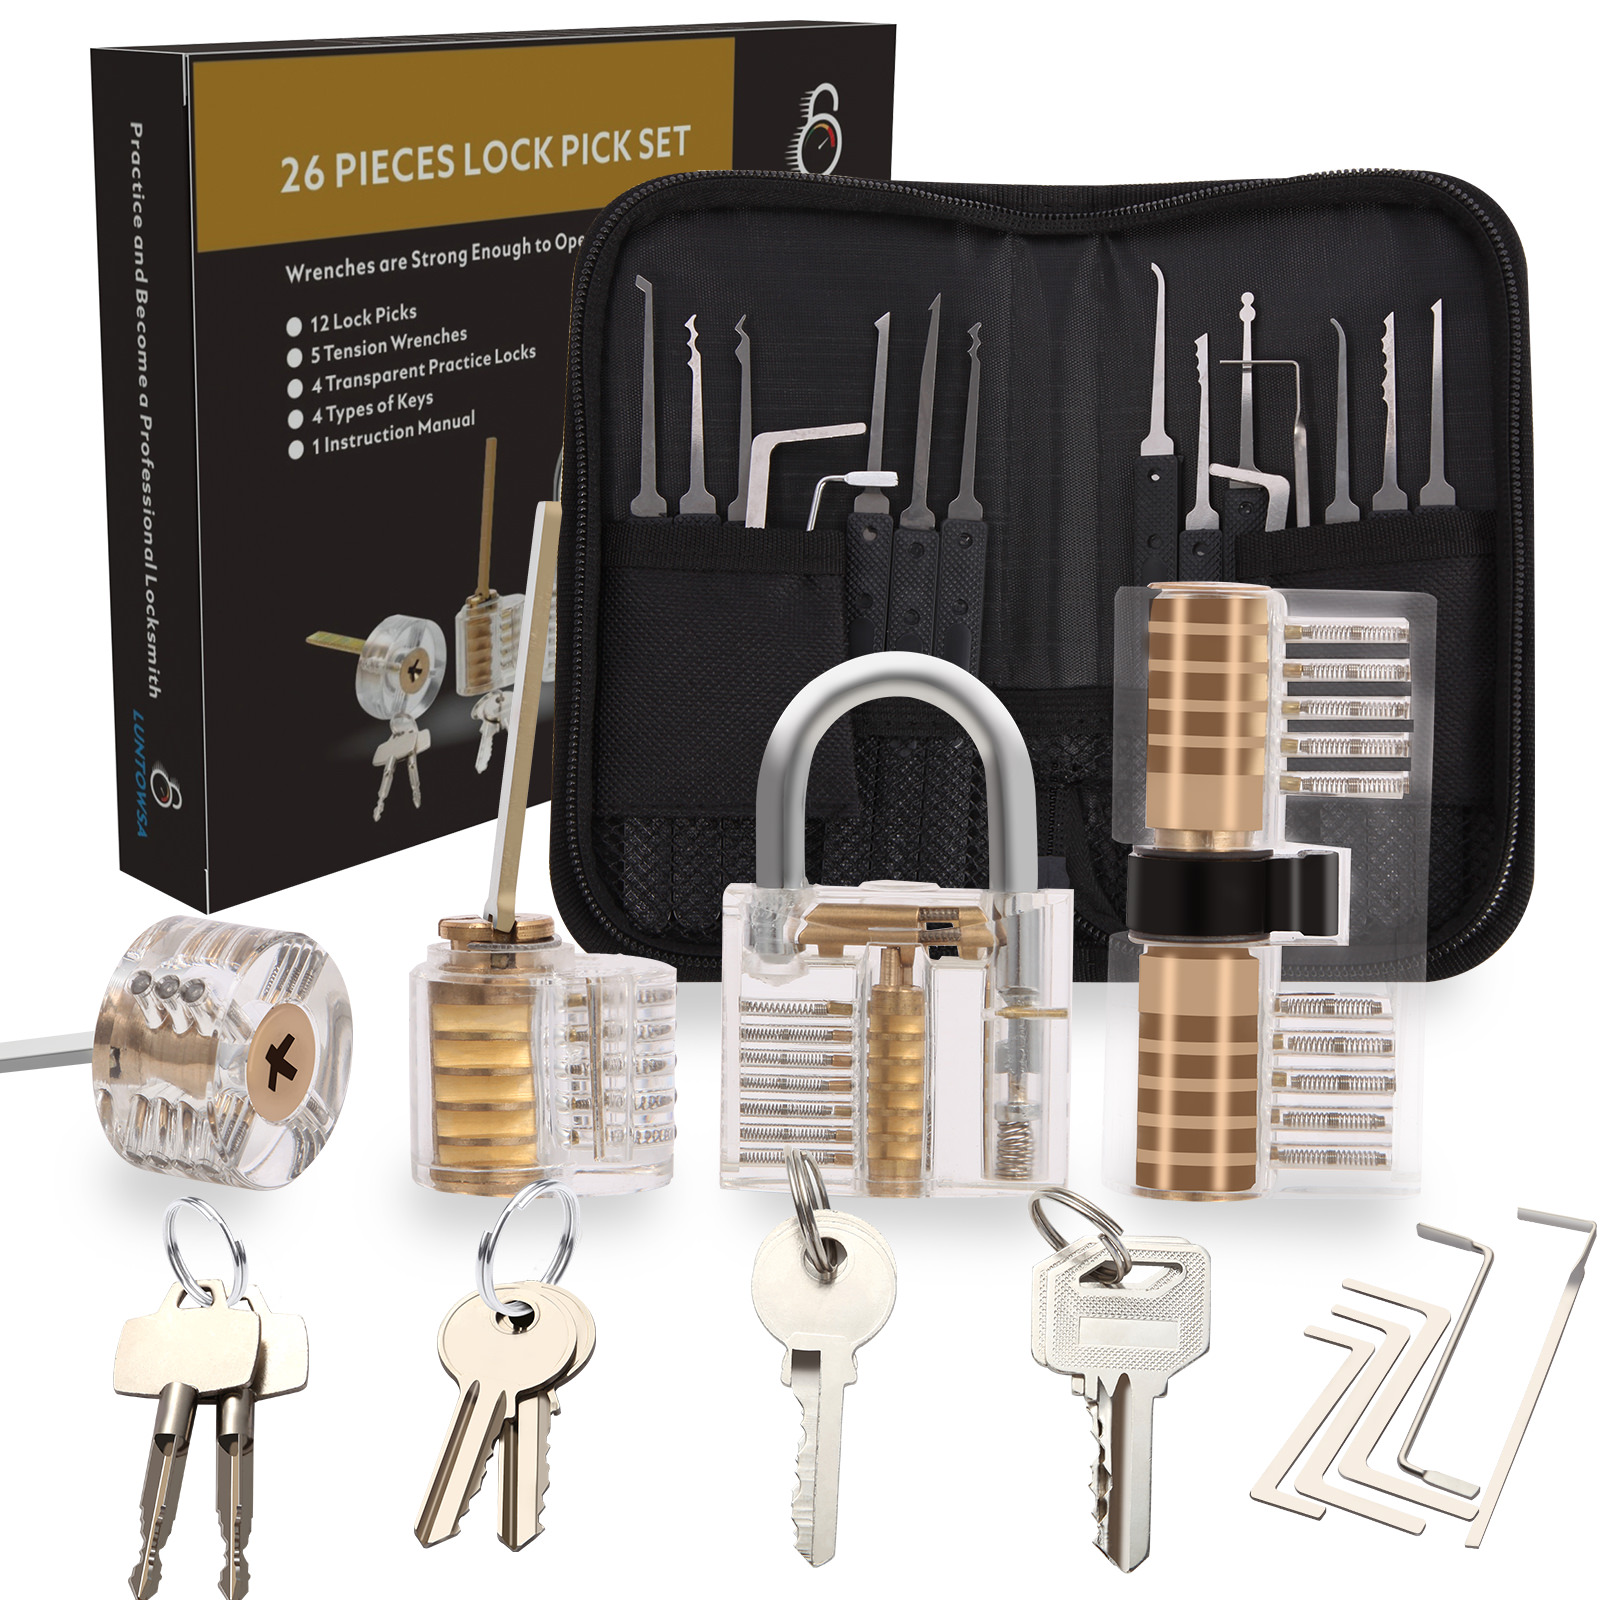 Dietrich set Generalschlüssel-Systeme Lockpicking set für Schlosser mit 4 Transparenten  Vorhängeschloss für Anfänger und Profis 26-Teiliges